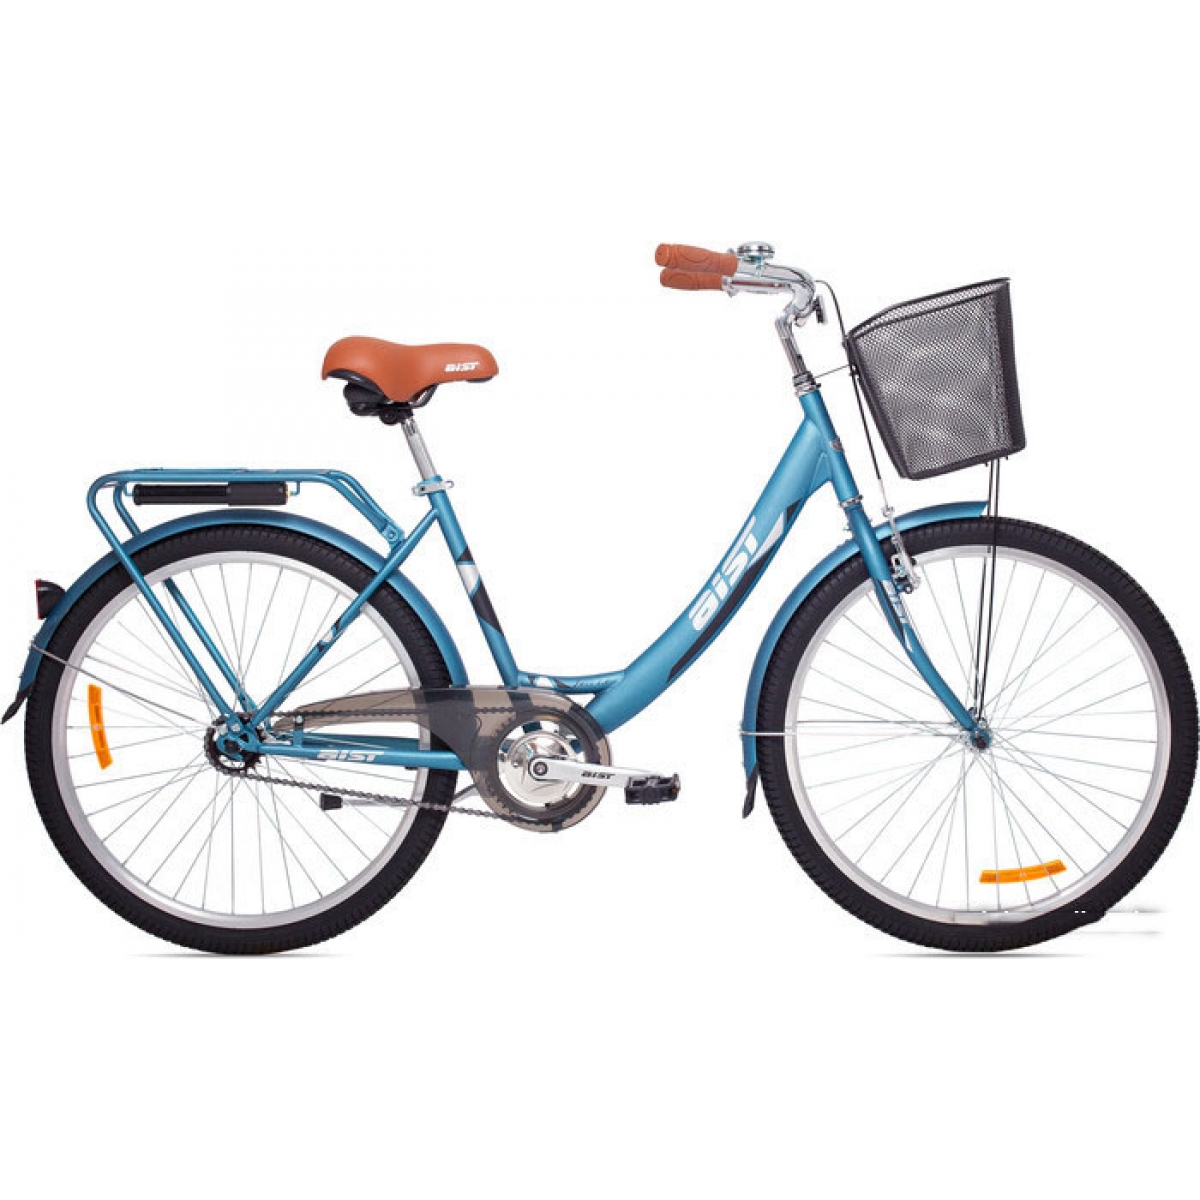 Купить велосипед в беларуси с доставкой. Велосипед Аист Jazz 1.0. Городской велосипед Aist Jazz 1.0. Велосипед Аист 26. Велосипед Aist Jazz 2.0 2016.